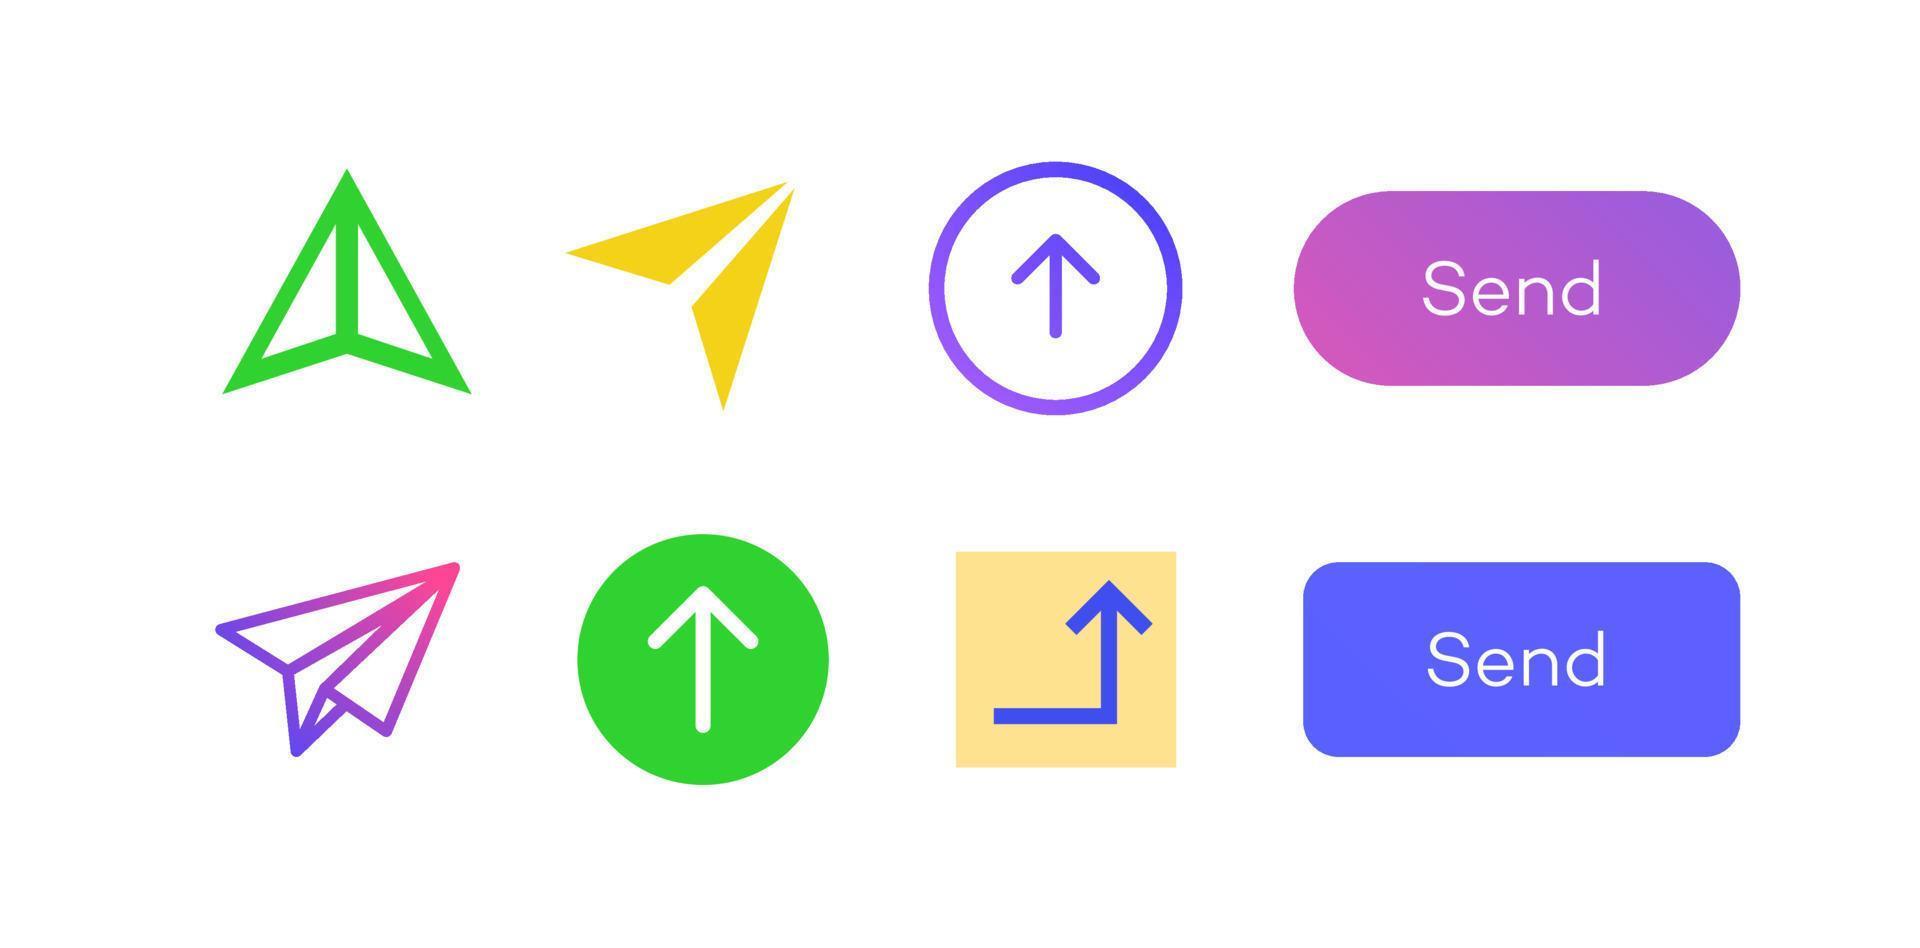 Send icon arrow vector set color style